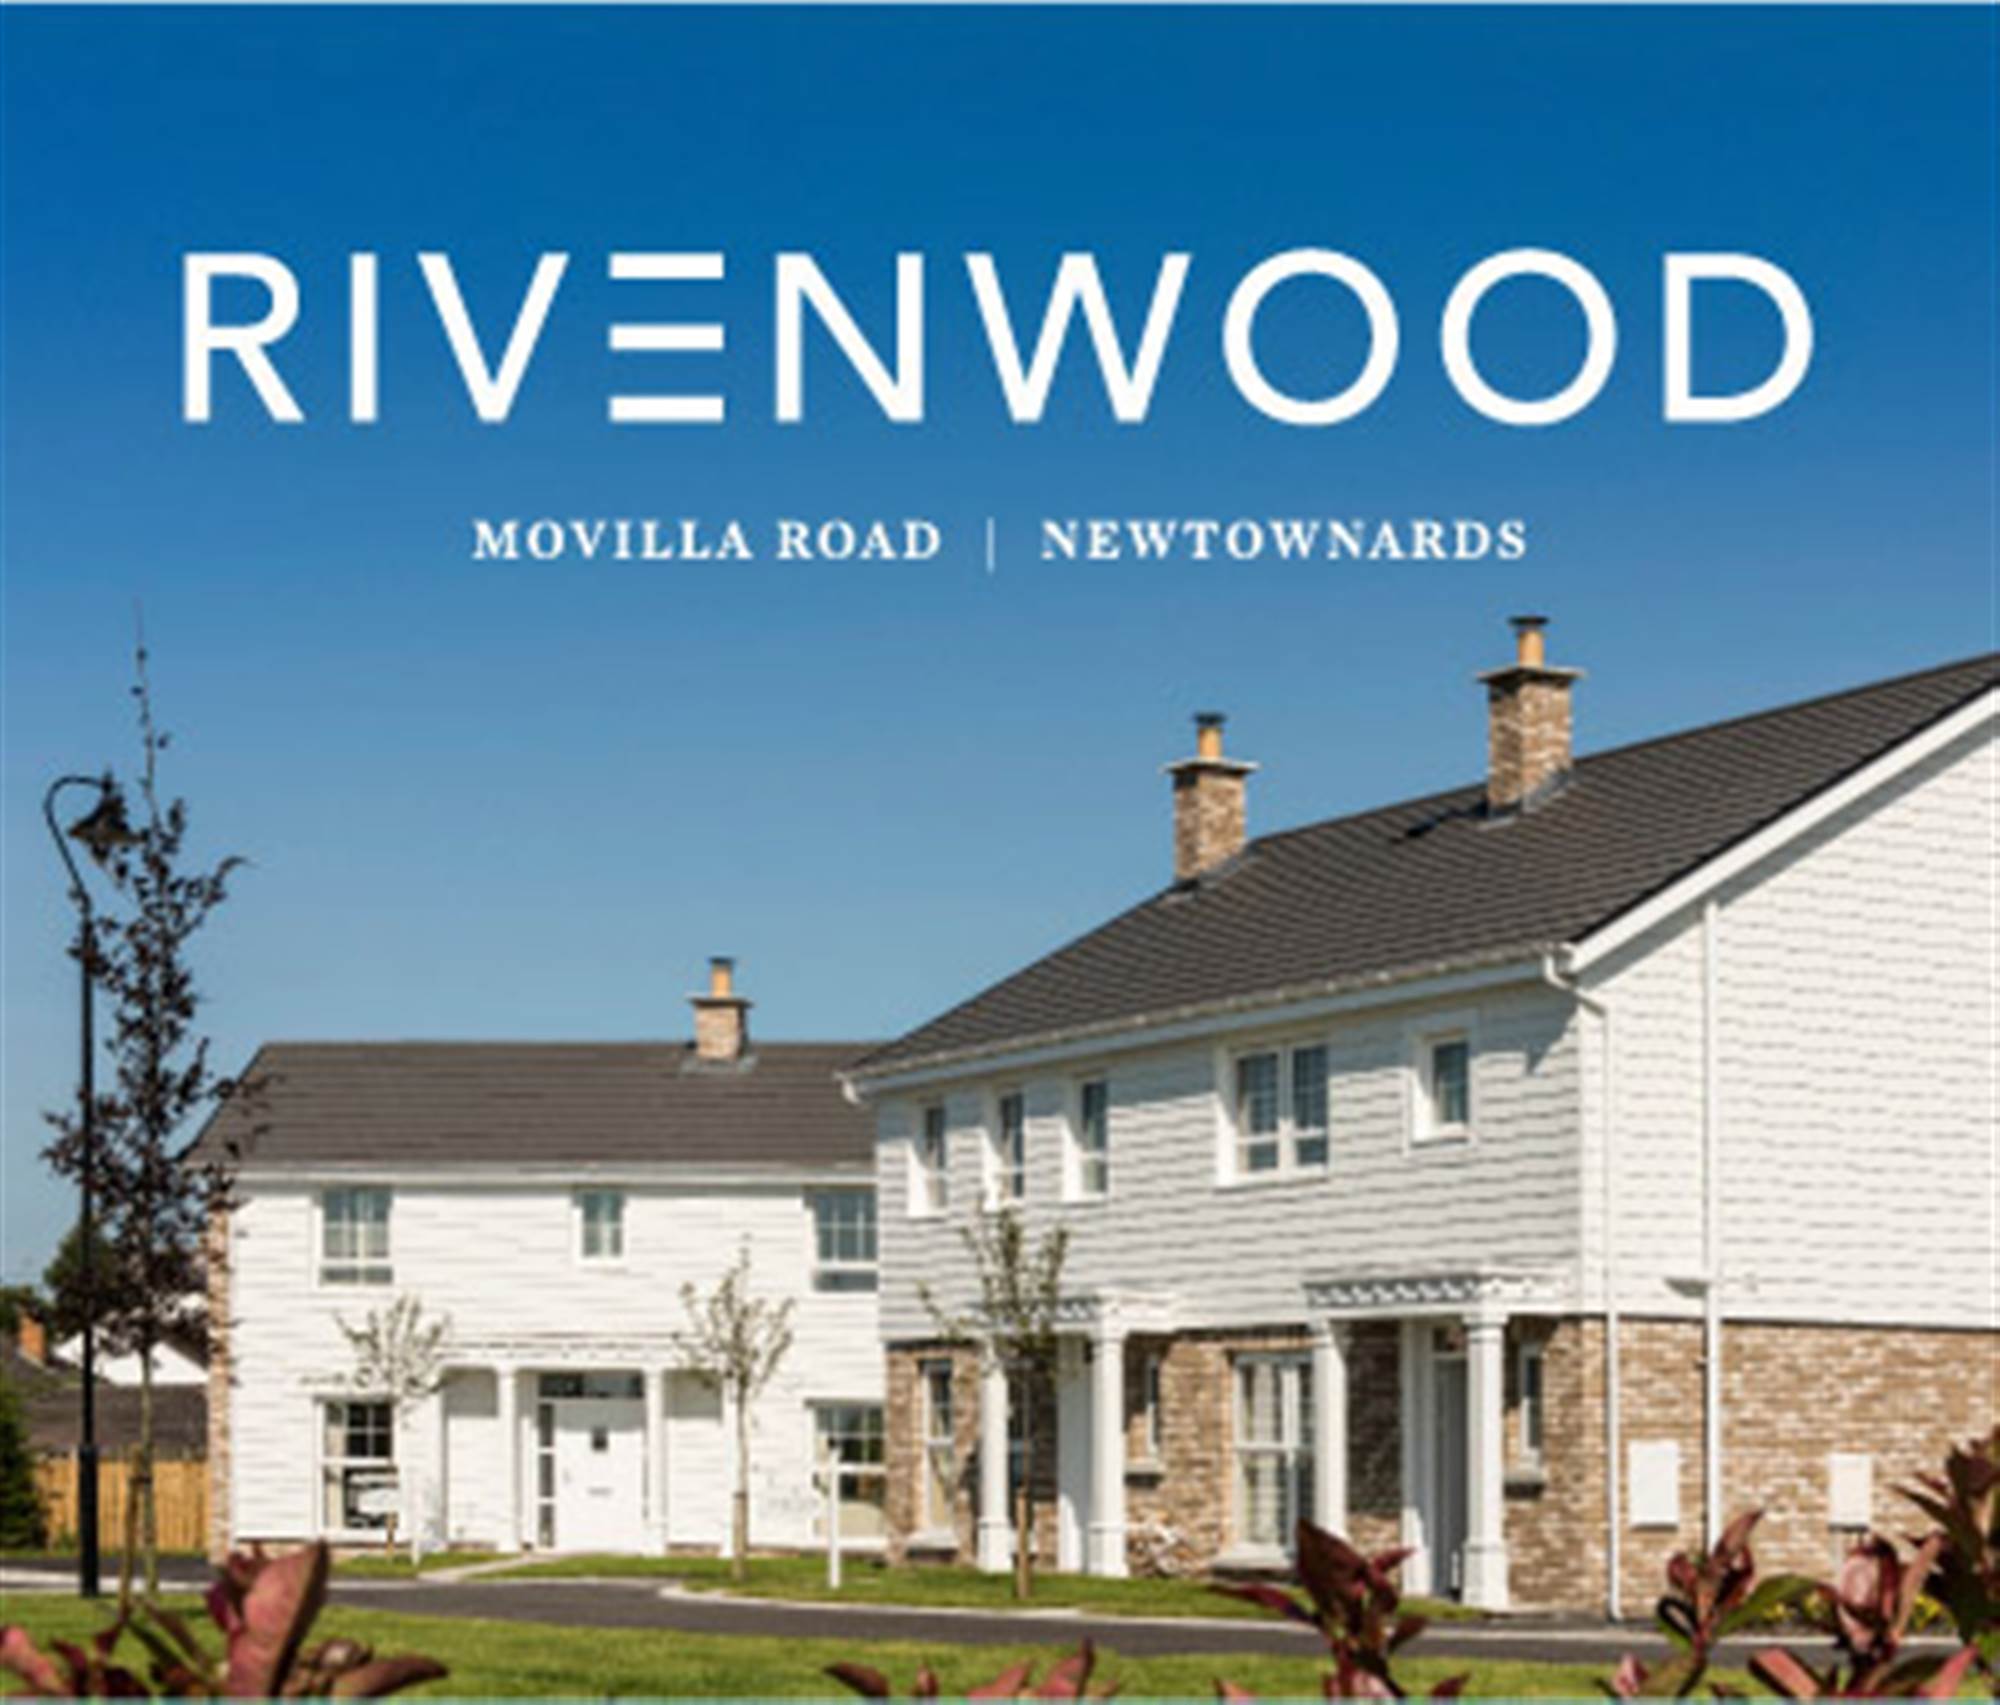 Rivenwood, Movilla Road, Newtownards